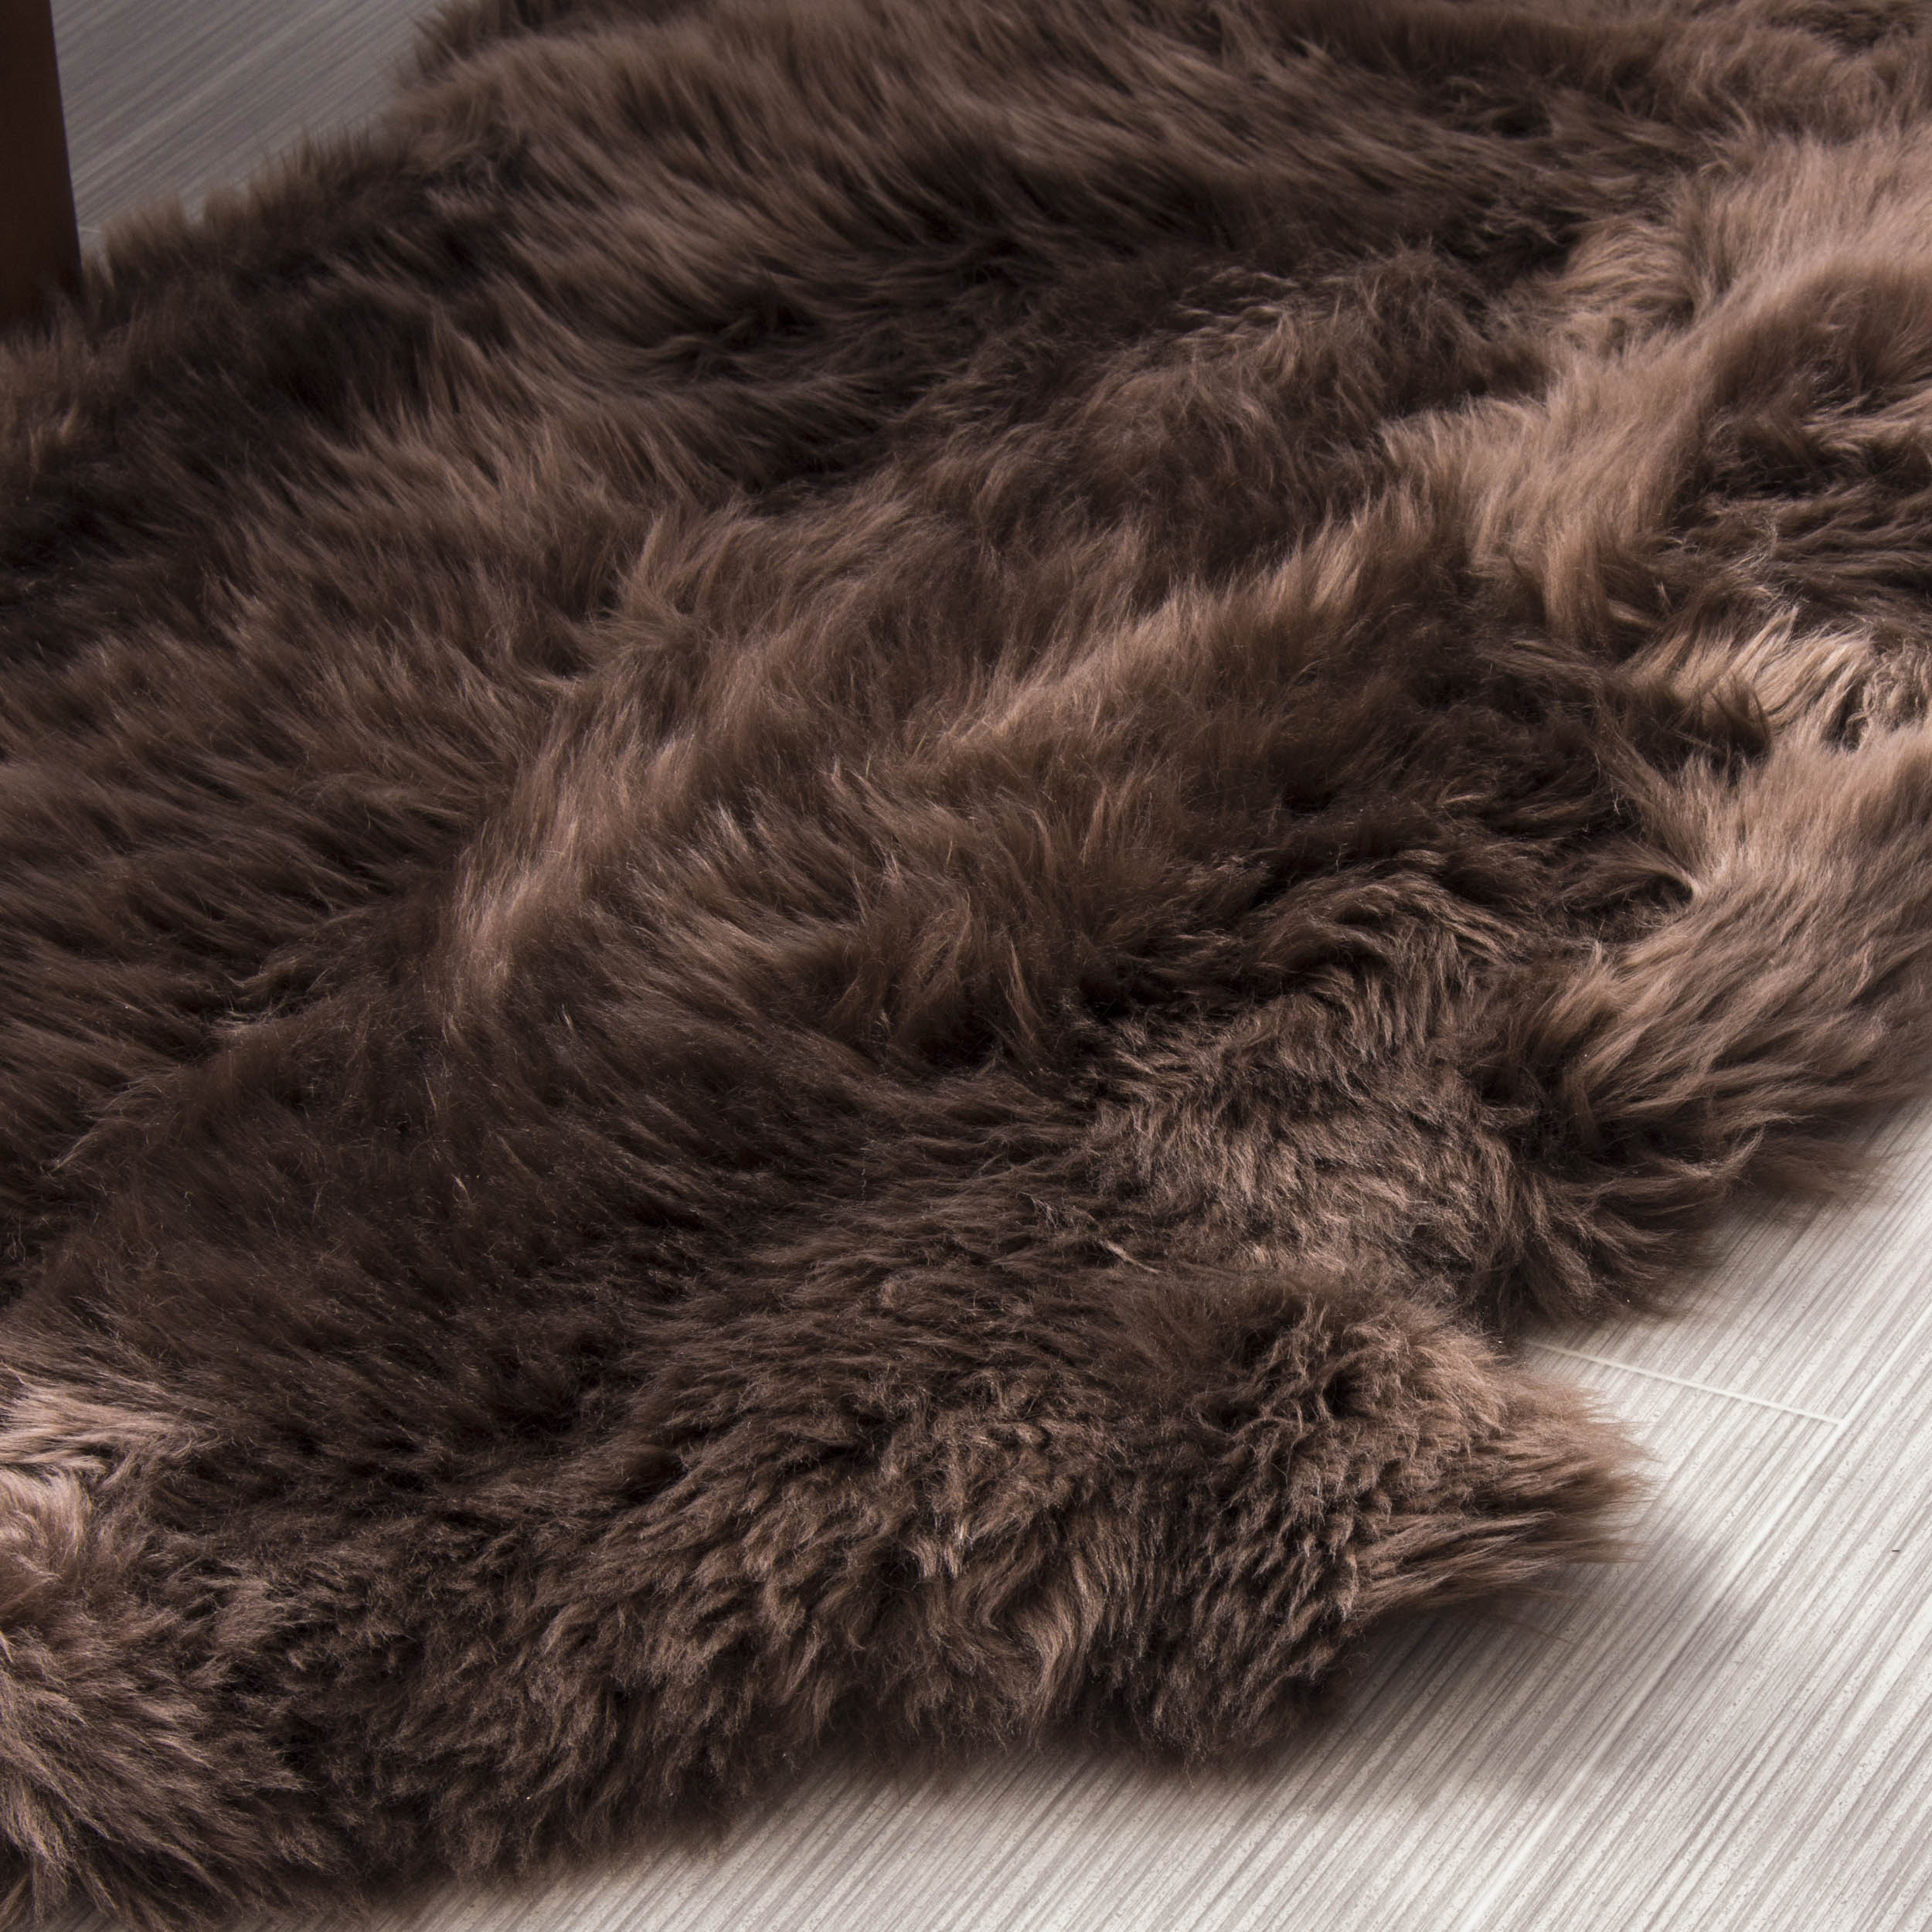 Natural Sheepskin Rug Shearling Fur Pelt #color_dark brown